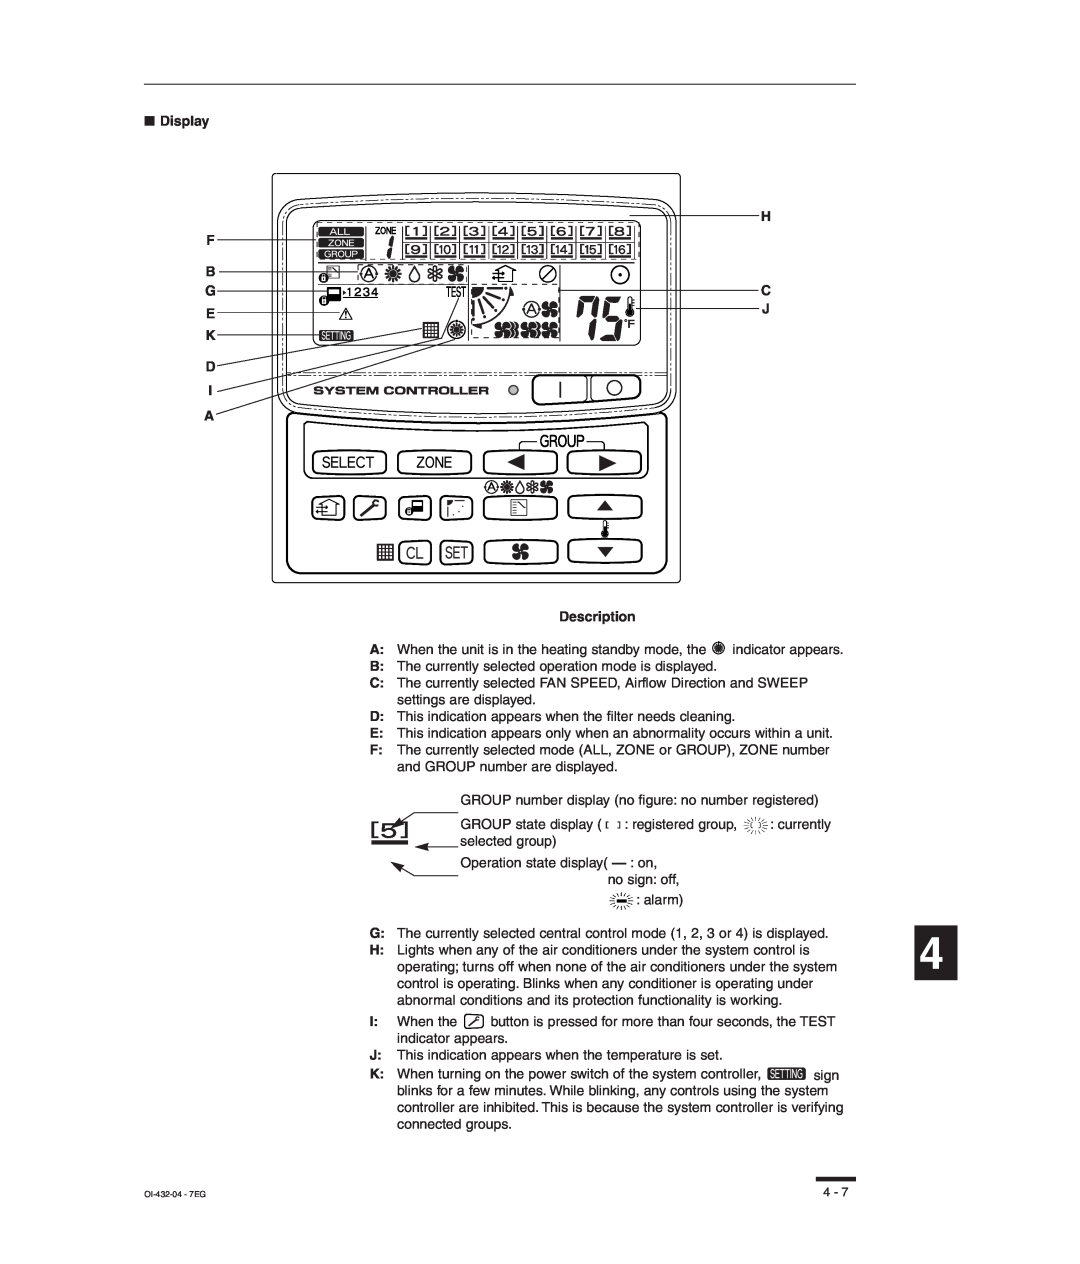 Sanyo RCS-SH80UA, TM-SH80UG, SHA-KC64UG, RCS-SH80UG instruction manual Display F B G E K D I A, H C J Description 